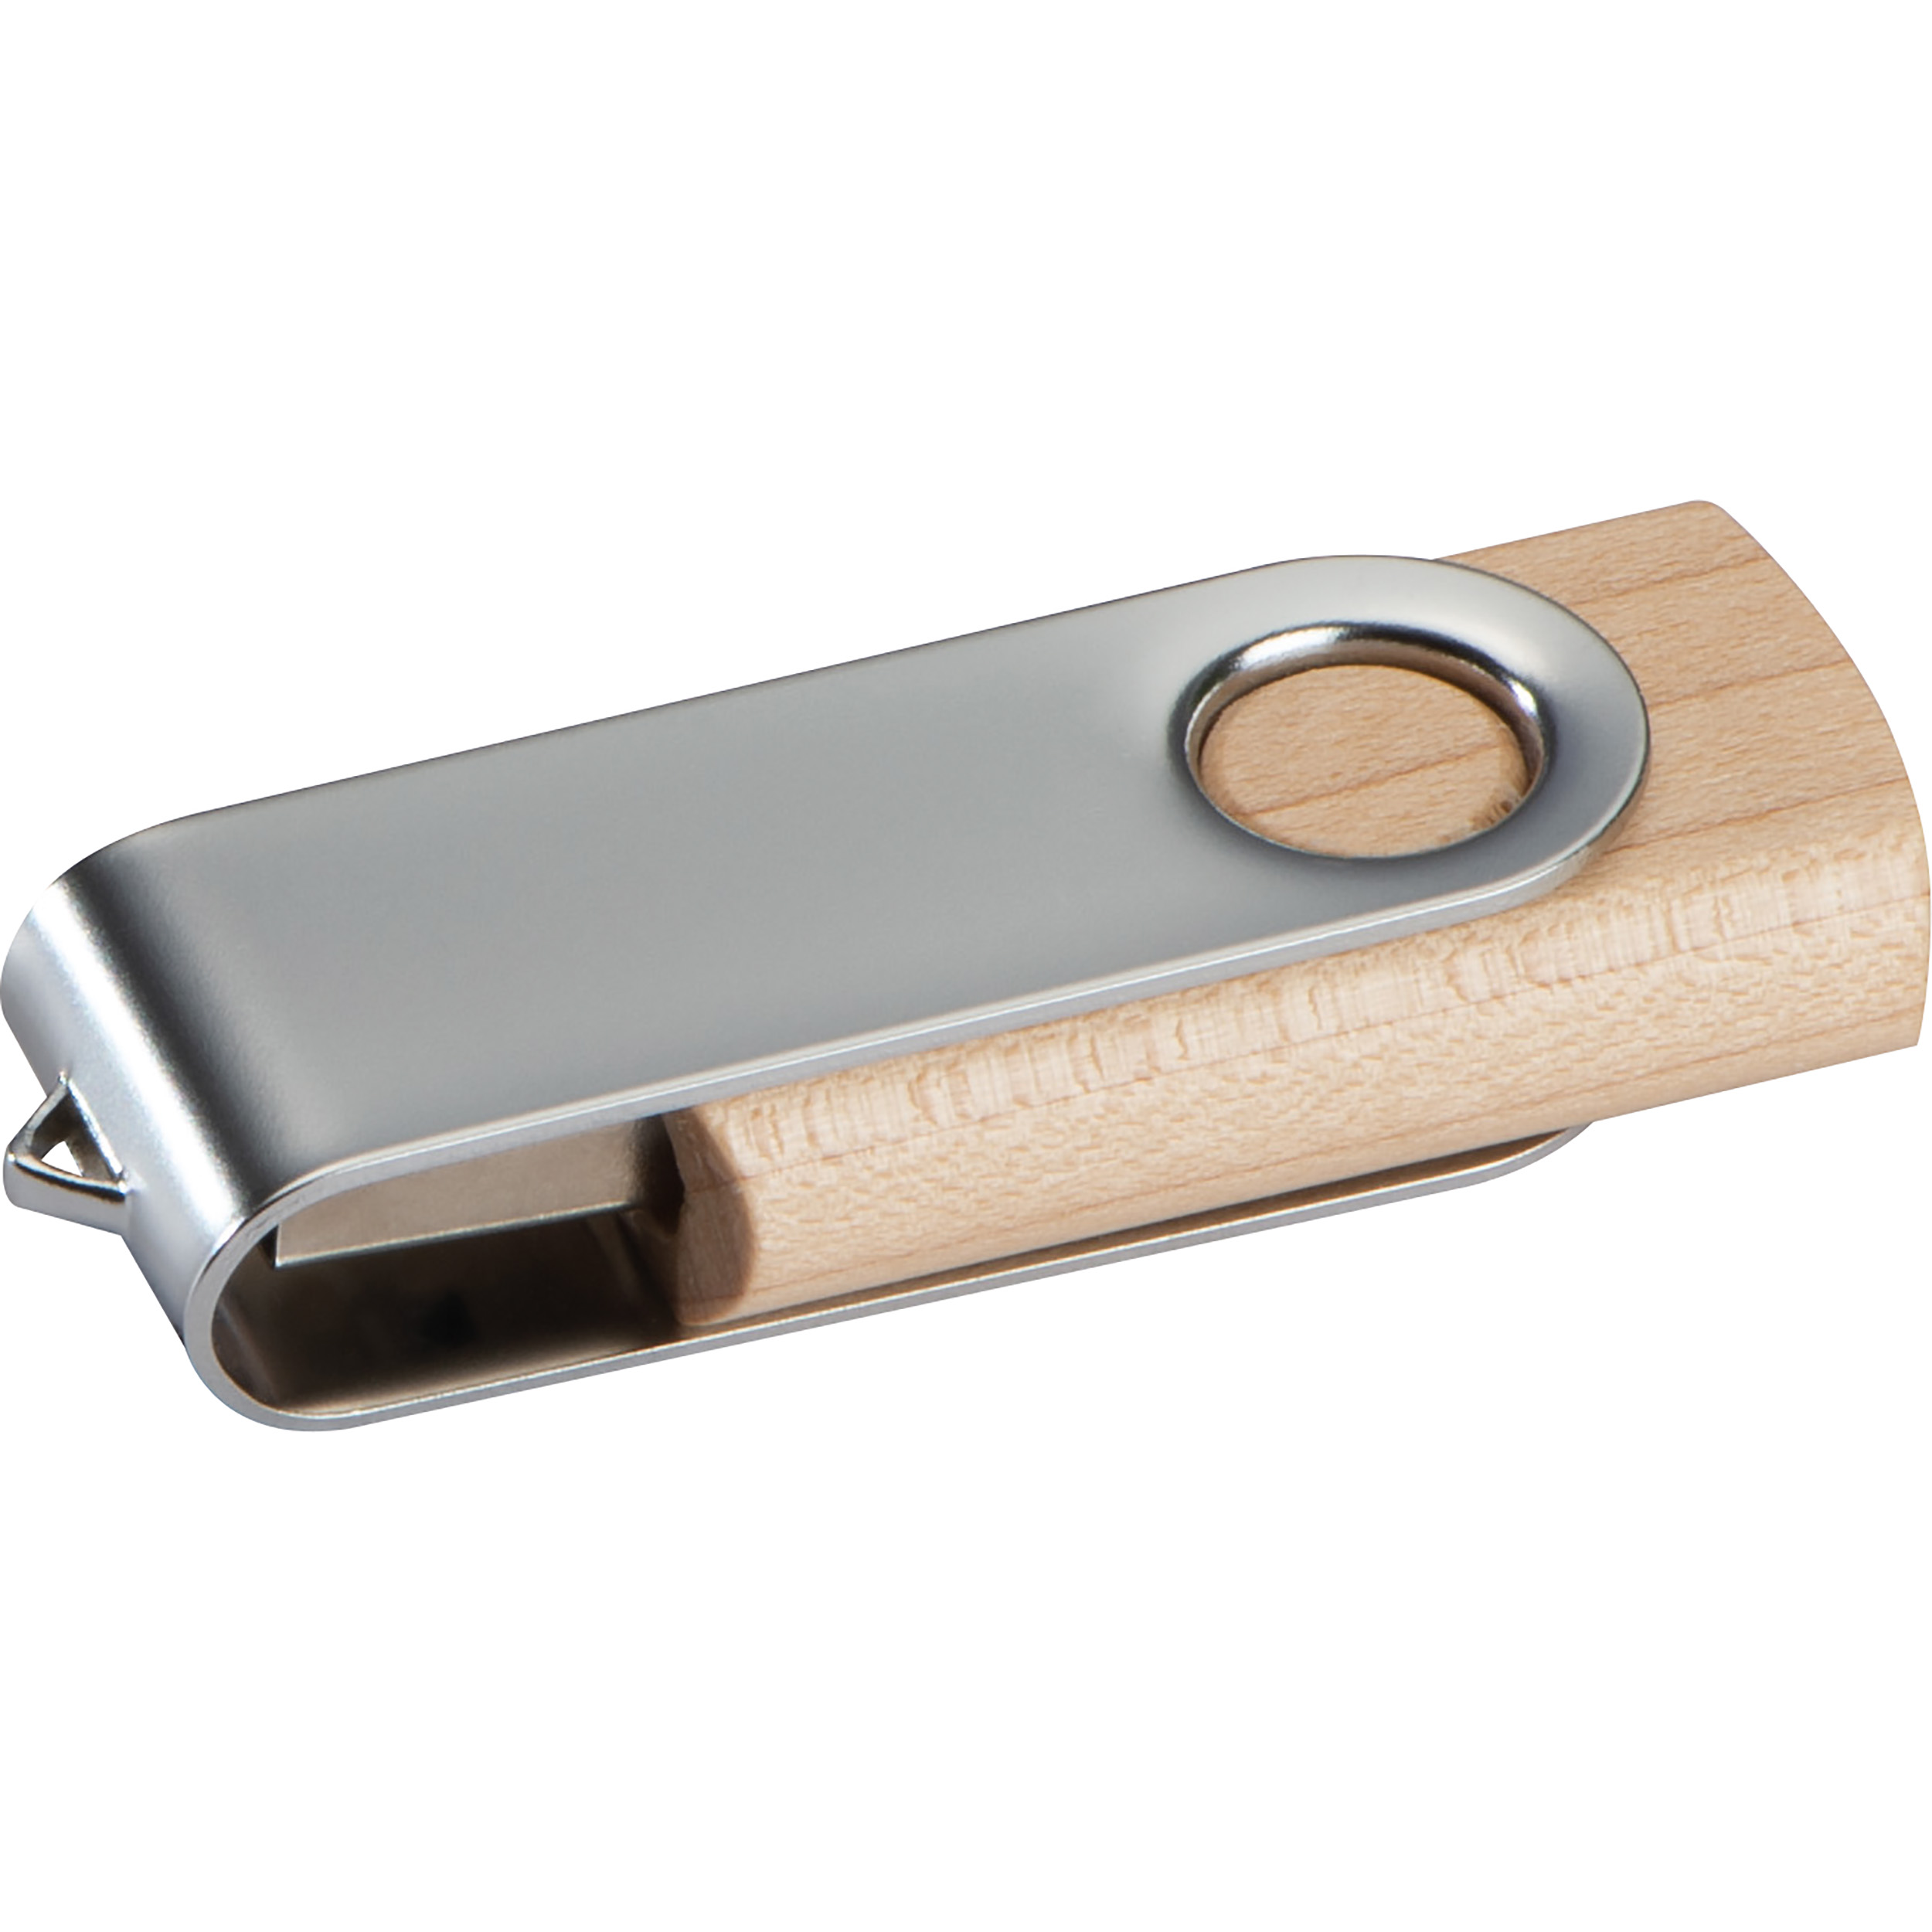 Chiavetta USB twist con cover in legno chiaro  - 8GB